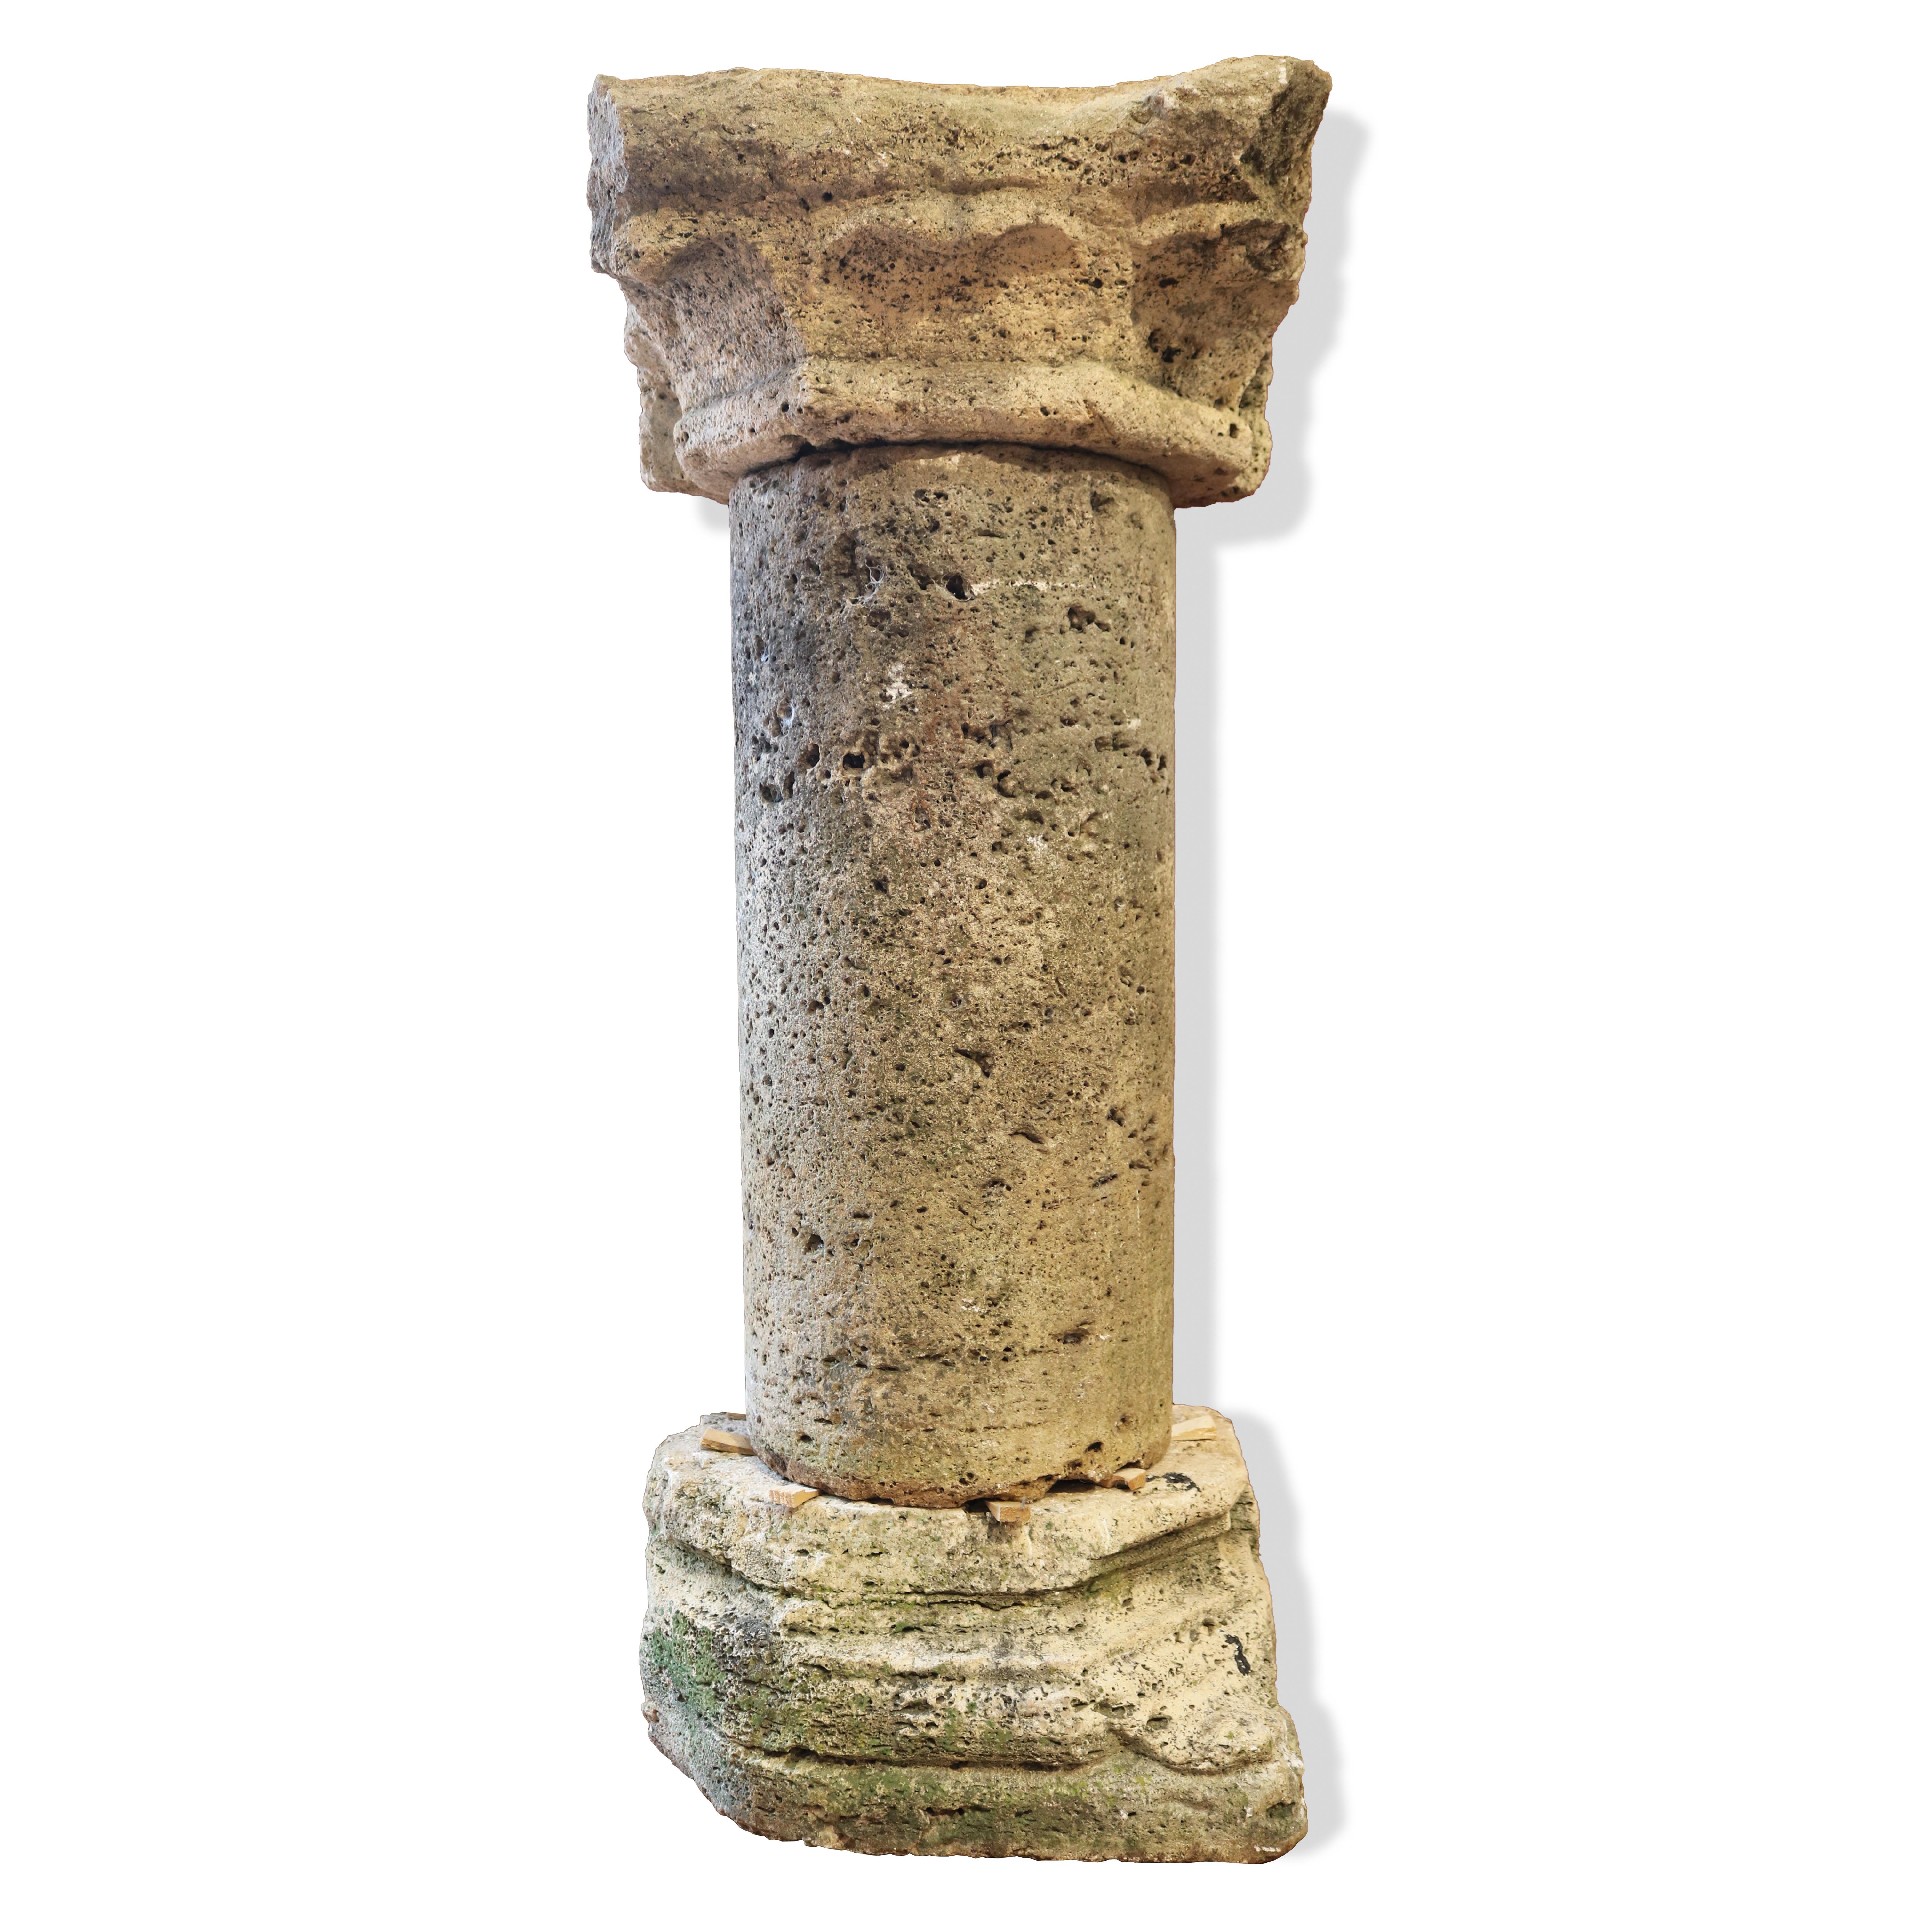 Colonna antica in pietra. - Colonne antiche - Architettura - Prodotti - Antichità Fiorillo